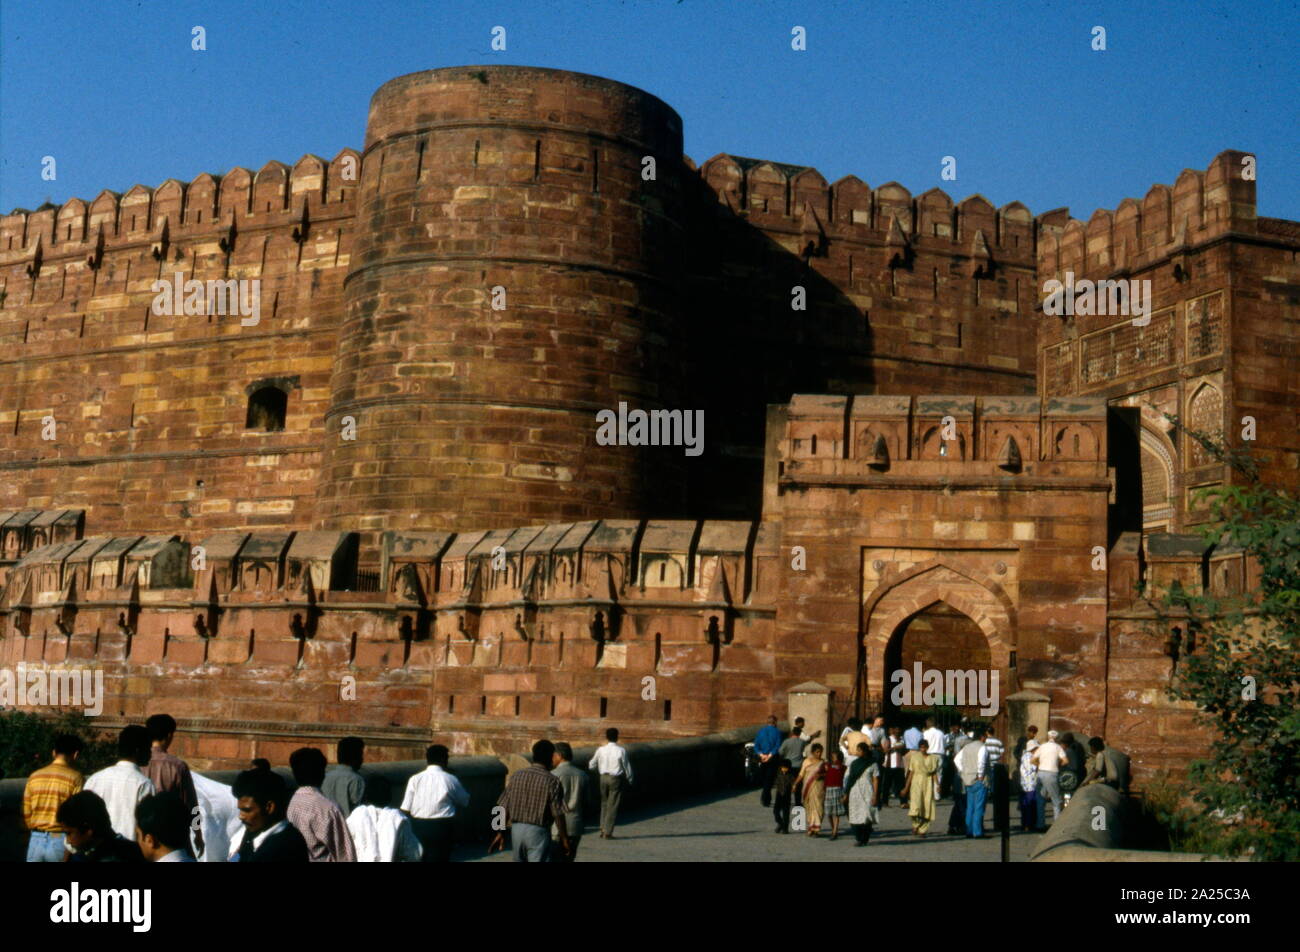 Fort d'Agra est un fort historique dans la ville d'Âgrâ en Inde. Il a été la principale résidence des empereurs de la dynastie moghole jusqu'à 1638, lorsque la capitale fut déplacée de Agra à Delhi. Banque D'Images